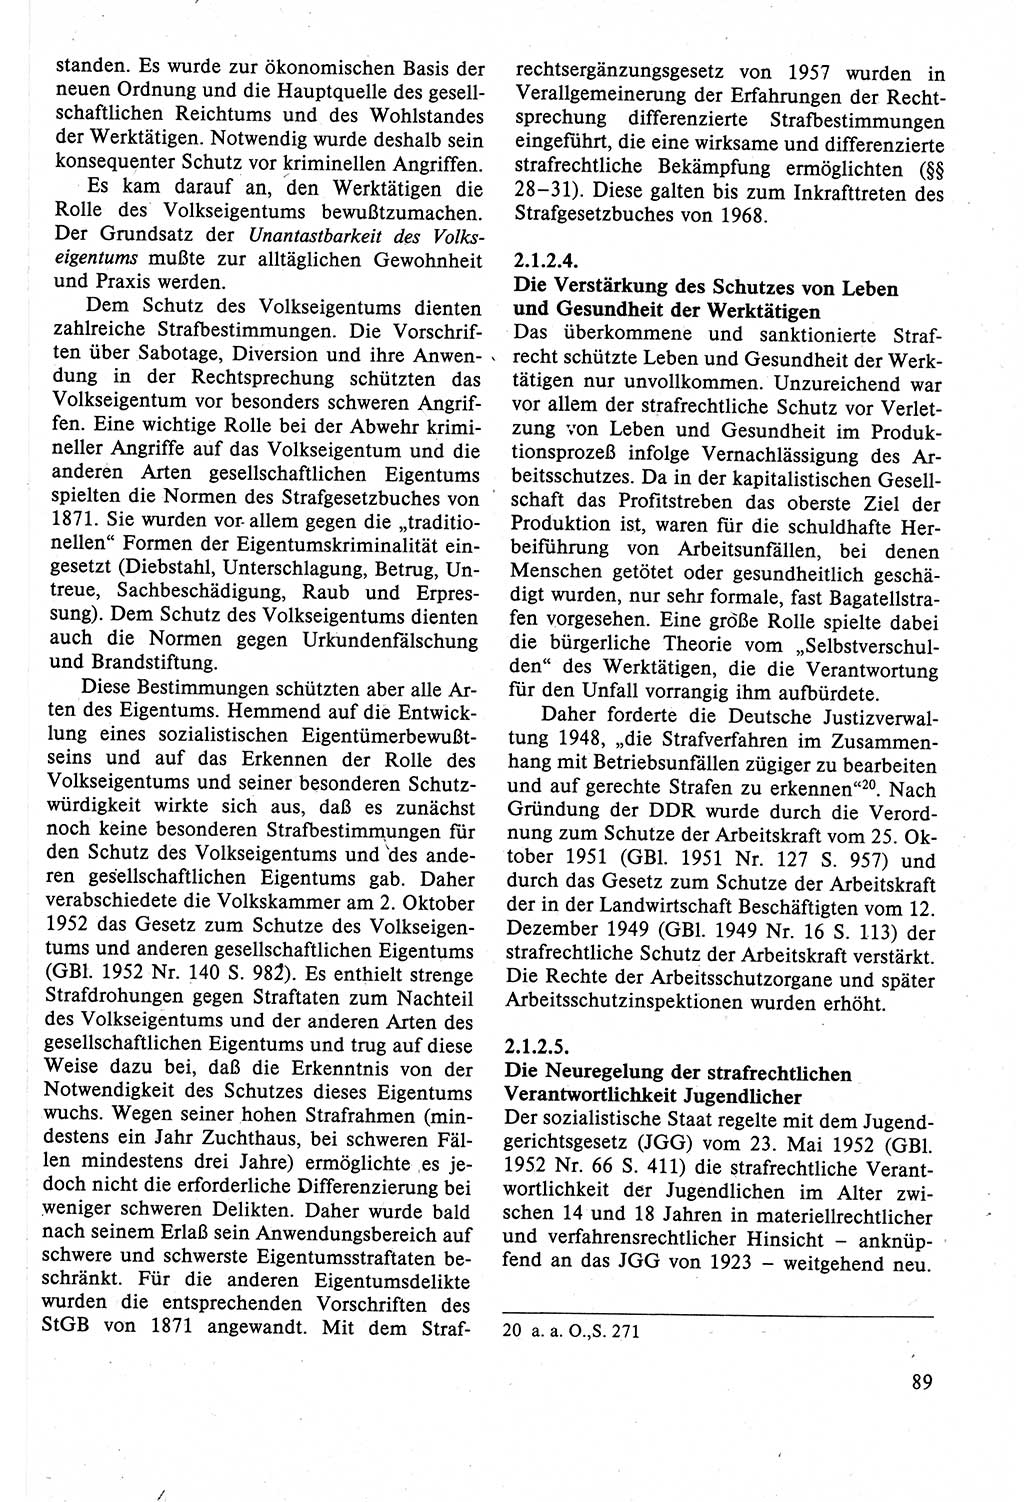 Strafrecht der DDR (Deutsche Demokratische Republik), Lehrbuch 1988, Seite 89 (Strafr. DDR Lb. 1988, S. 89)